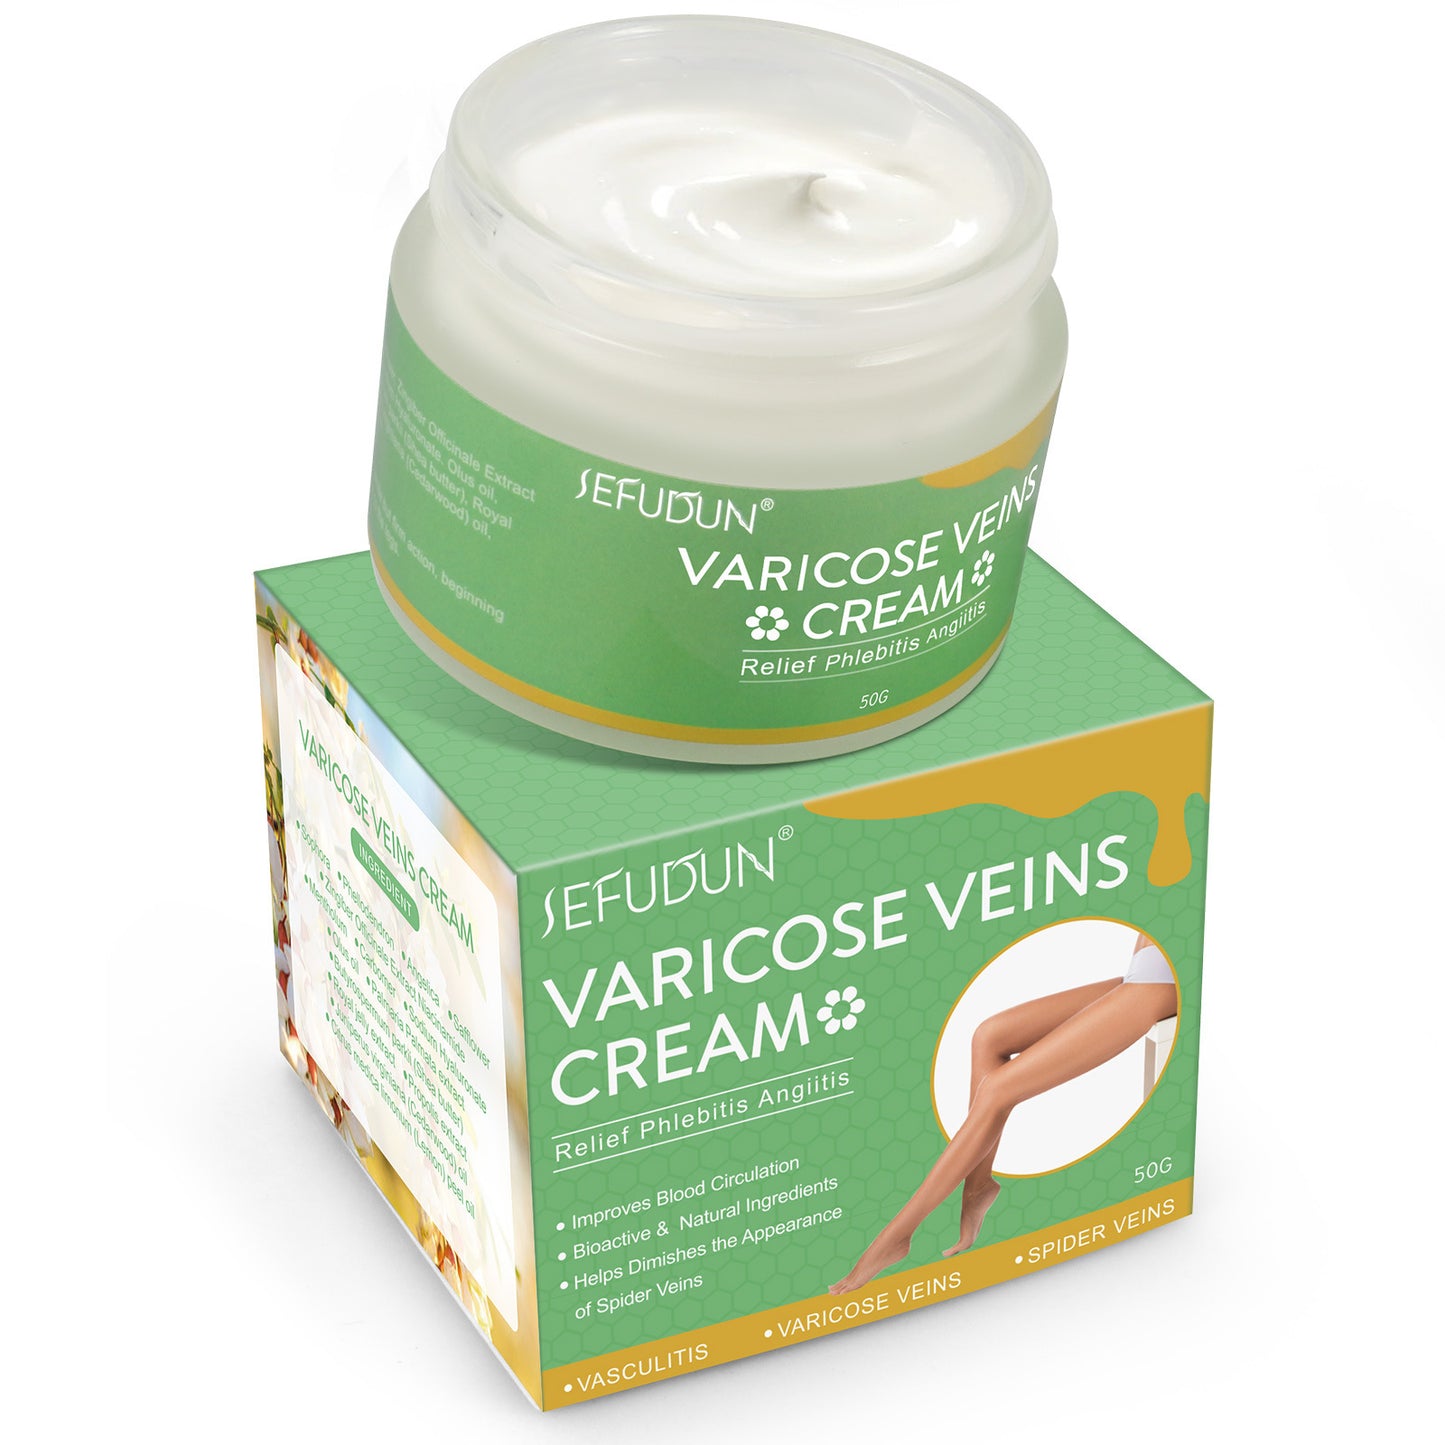 SEFUDUN Varicose Vein Cream